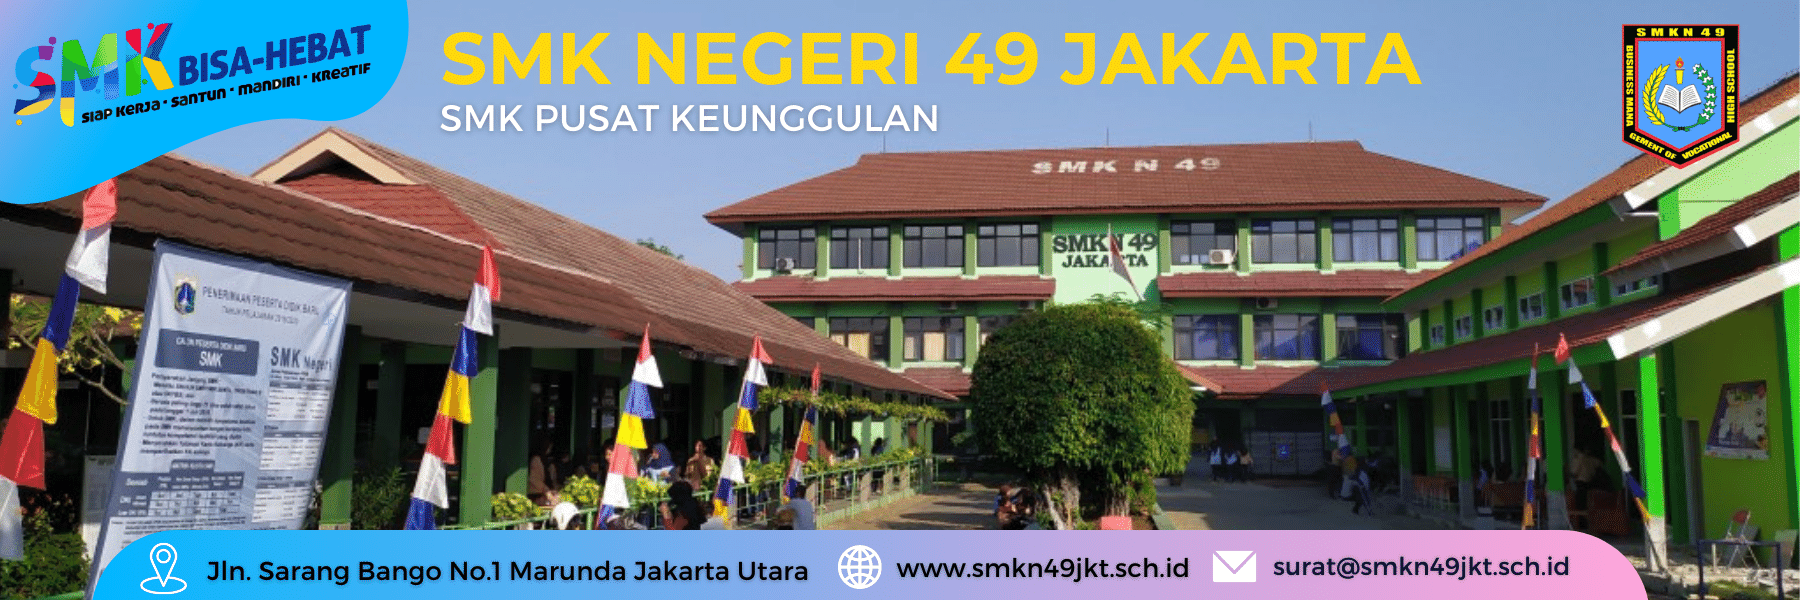 Selamat Datang Di website SMKN 49 Jakarta